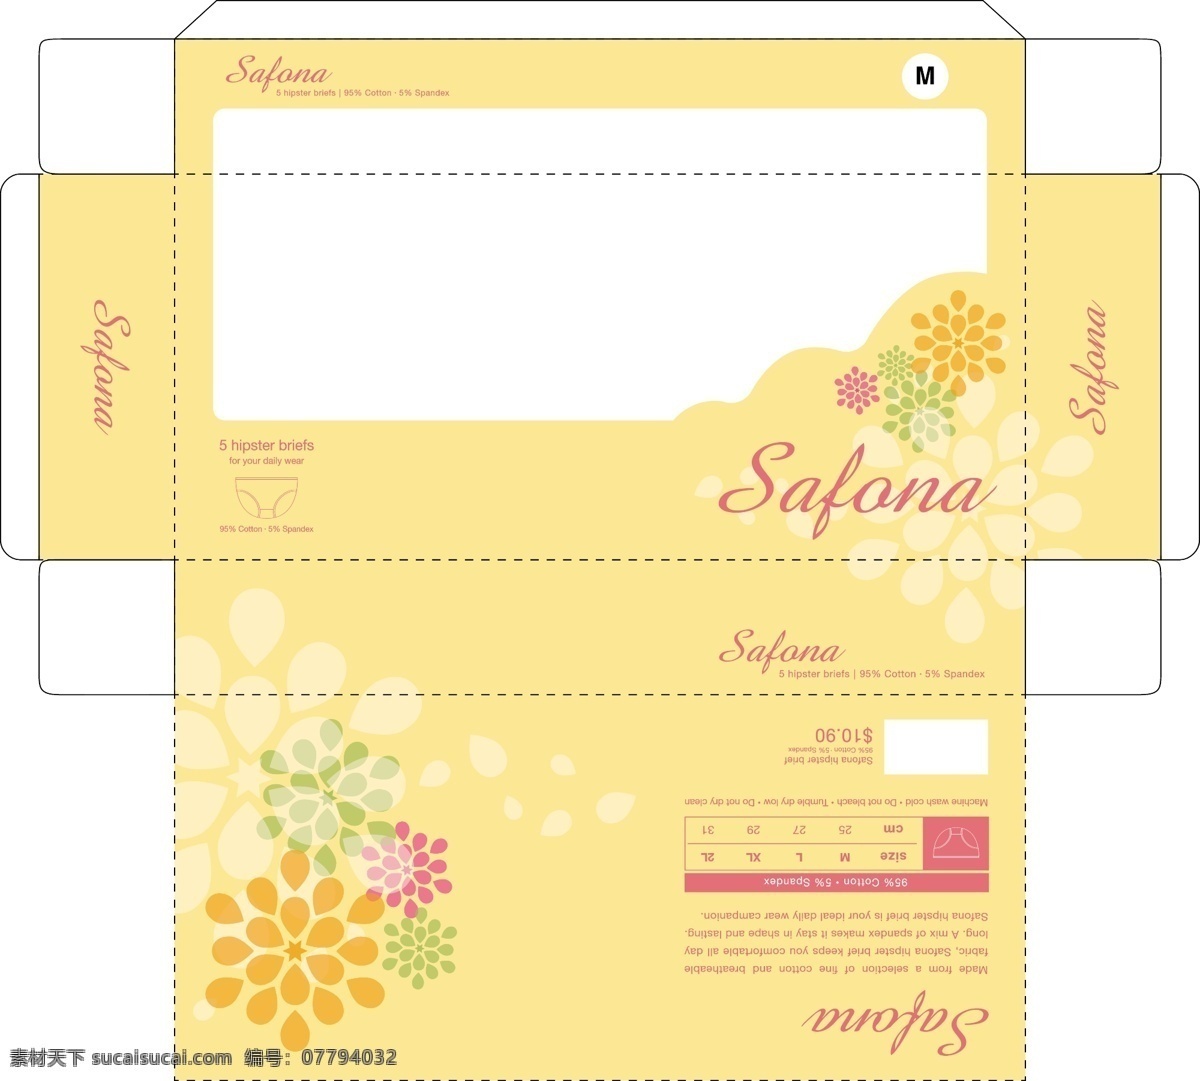 盒子包装设计 盒子 包装设计 safona briefs 产品设计